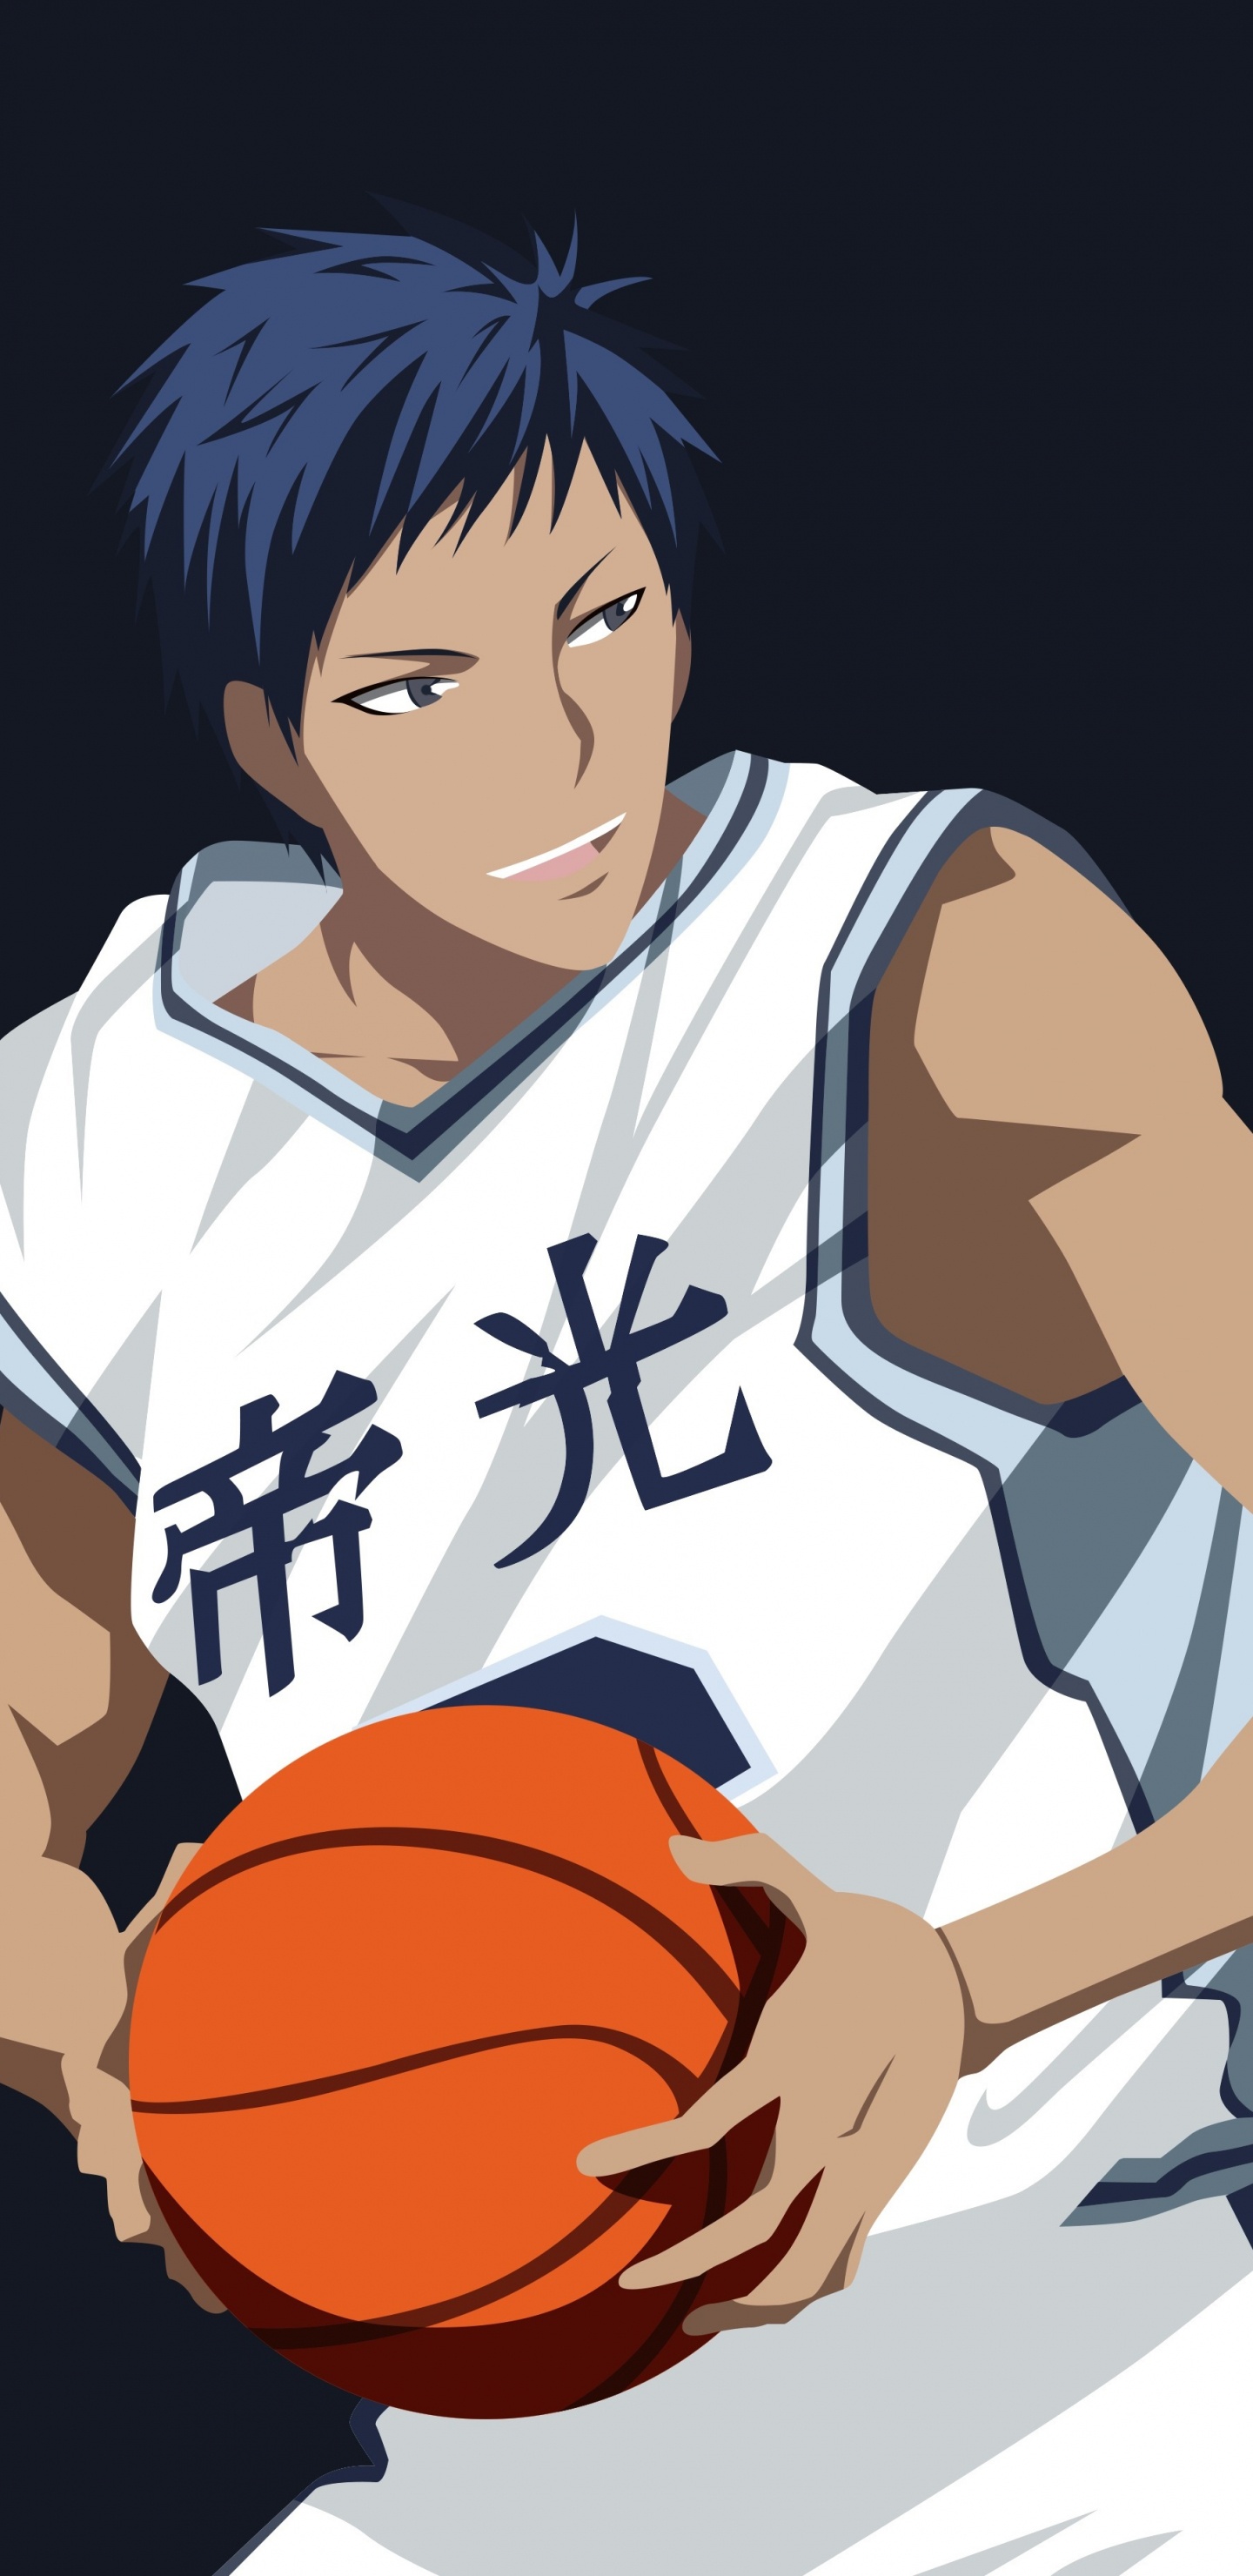 Personaje de Anime Masculino de Pelo Negro Sosteniendo Baloncesto. Wallpaper in 1440x2960 Resolution